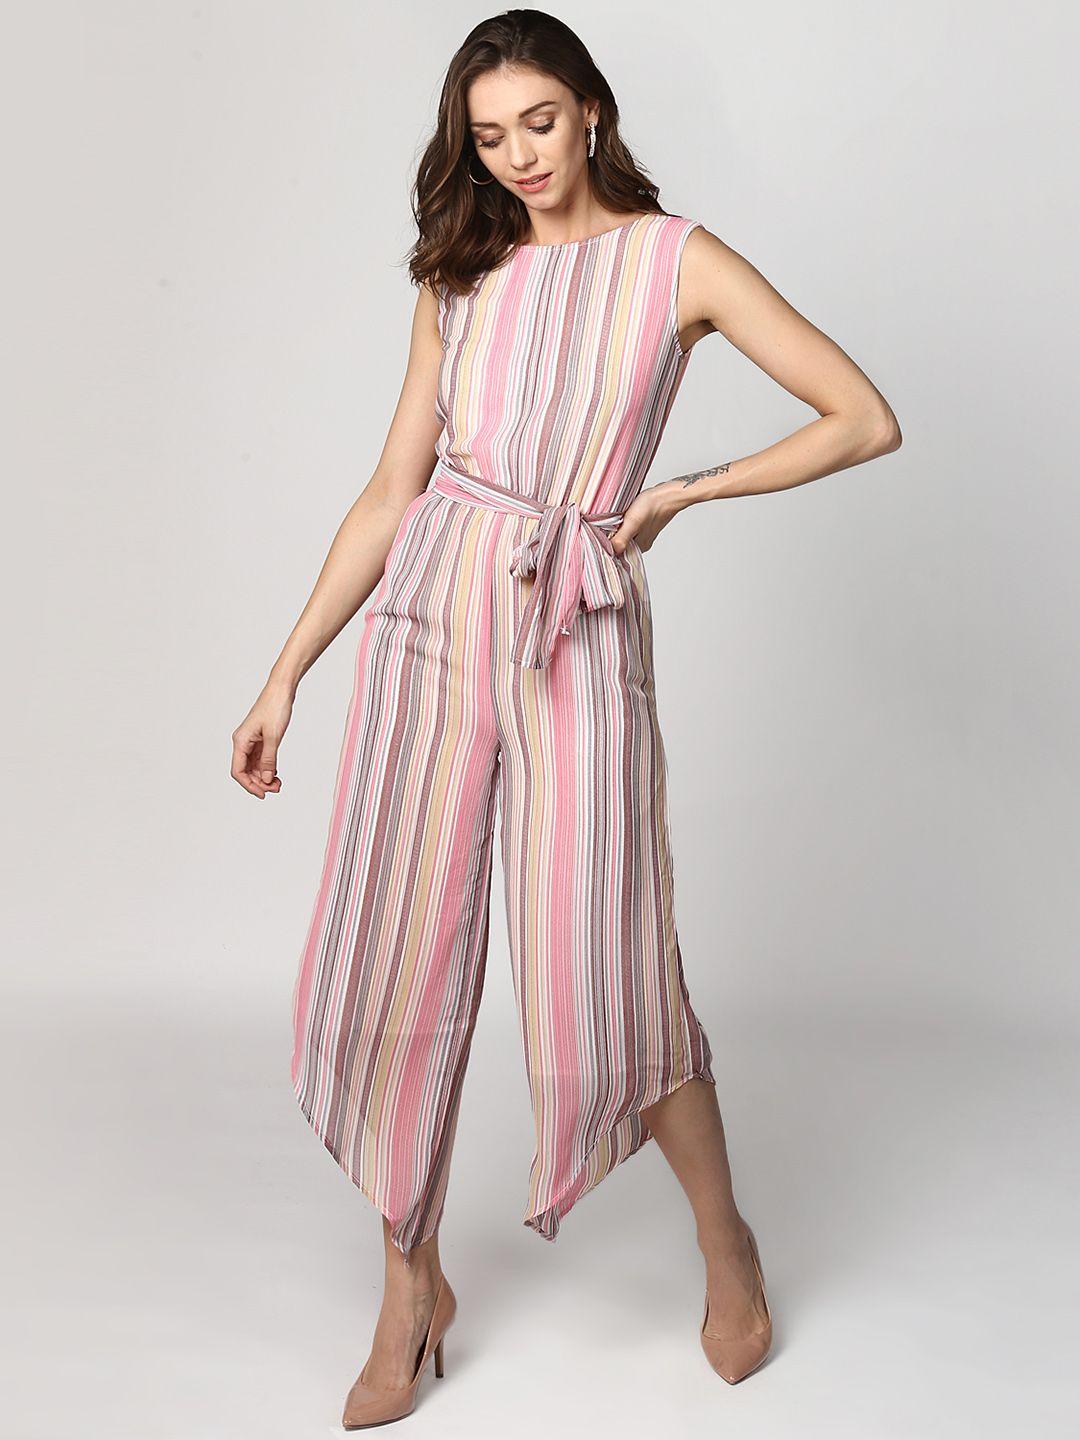 stylestone multicoloured striped capri jumpsuit